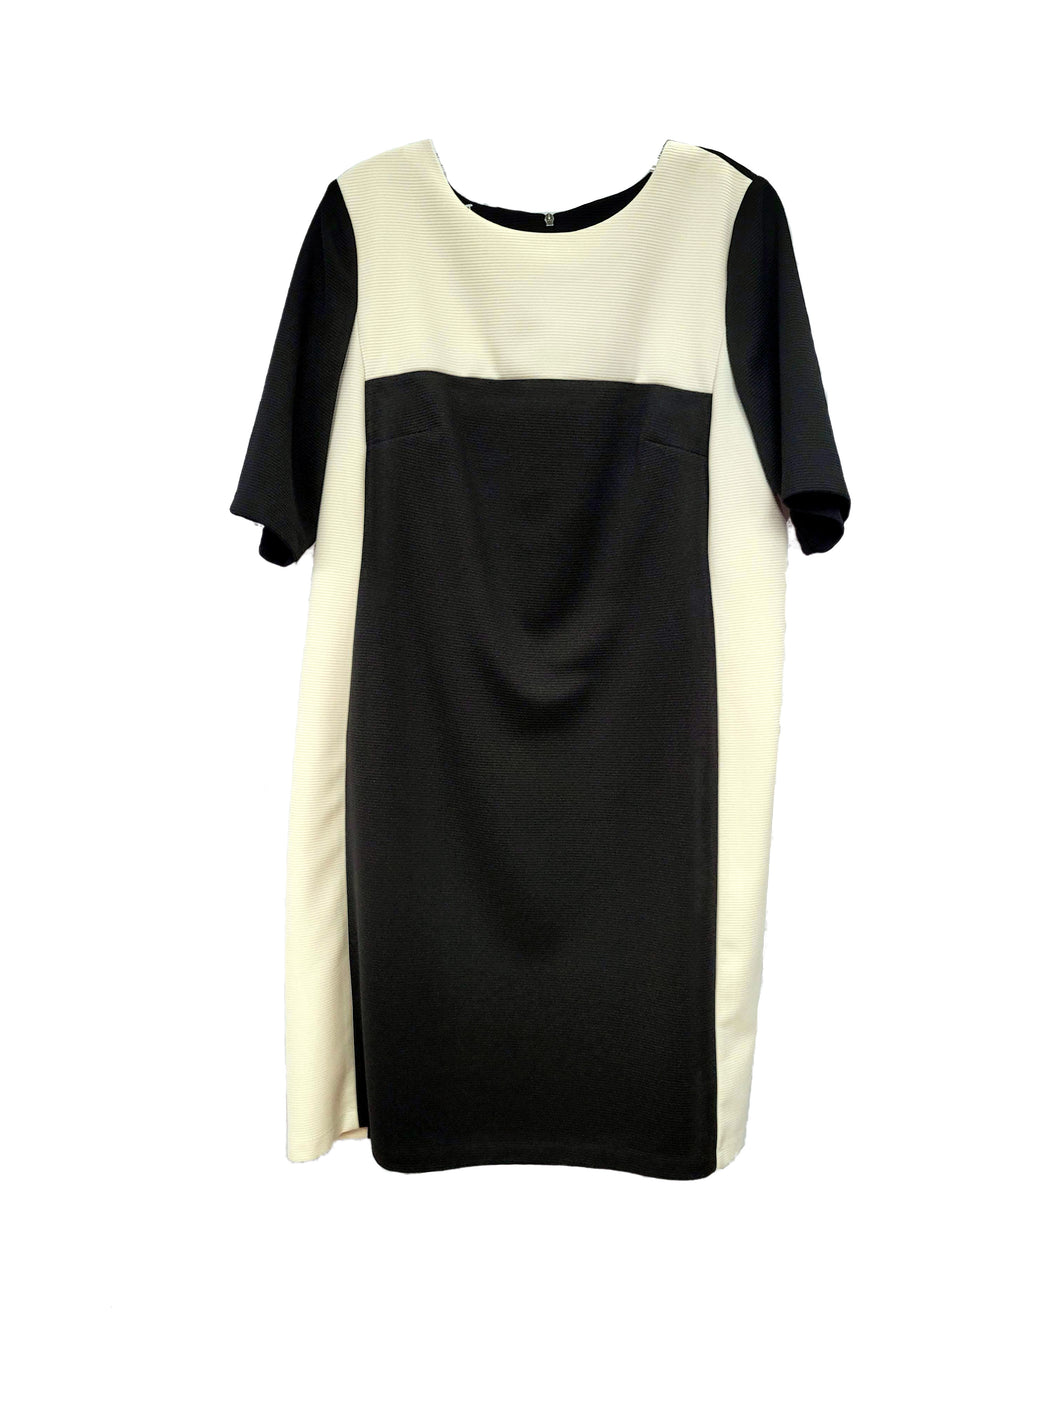 Dress - Size 14W